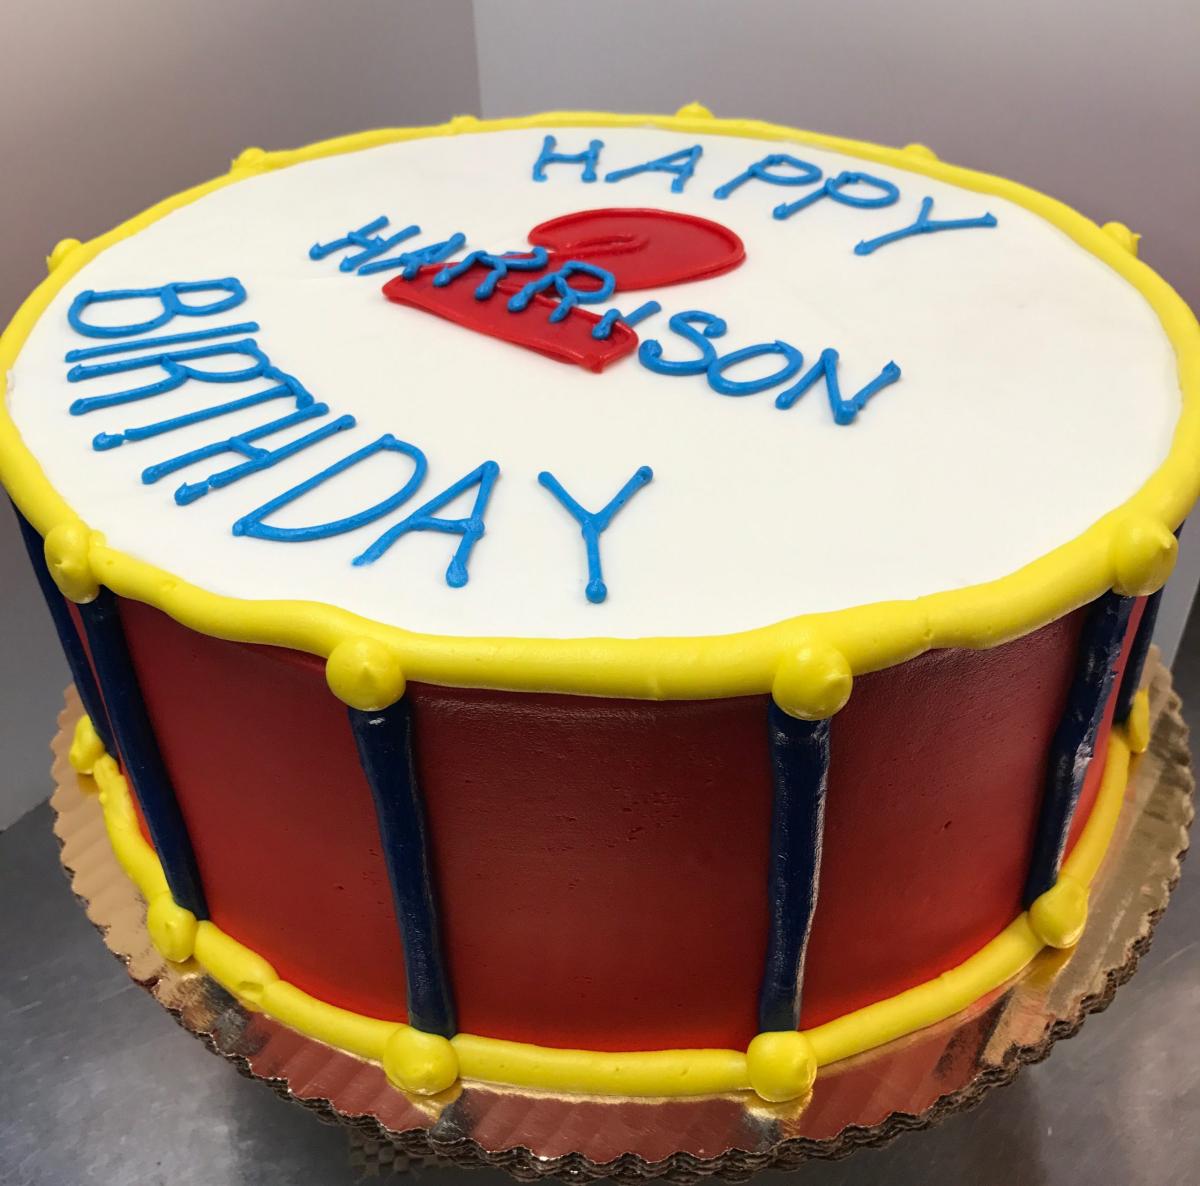 PassioNate Cakes : Snare Drum Cake